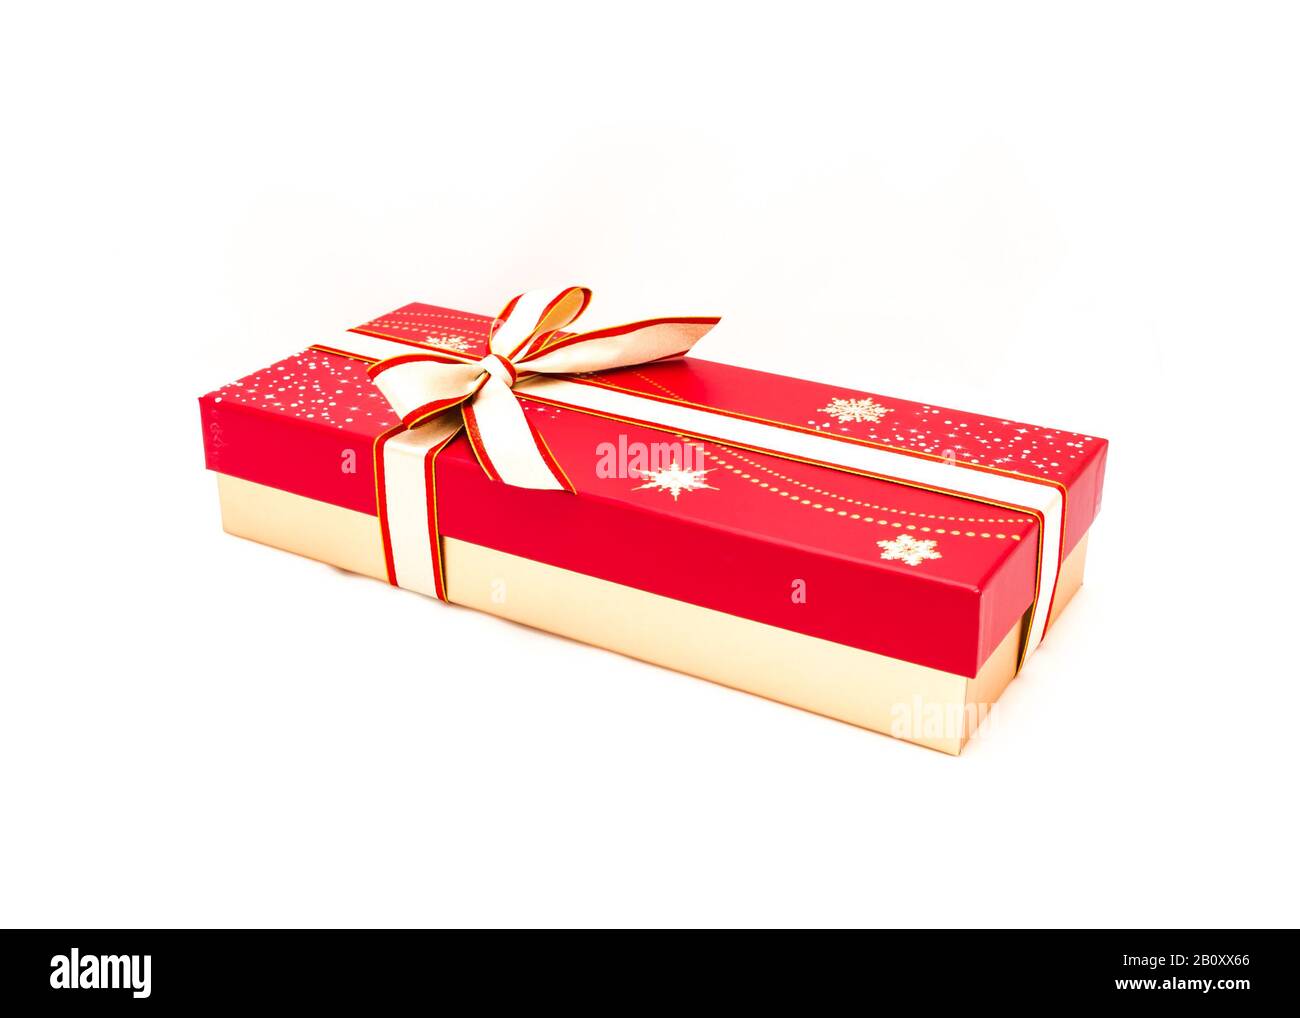 Fermer la boîte au chocolat avec un noeud papillon de couleur rouge et  jaune isolé sur fond blanc. Boîte cadeau en papier avec ruban pour le  concept de forfait Saint-Valentin Photo Stock -